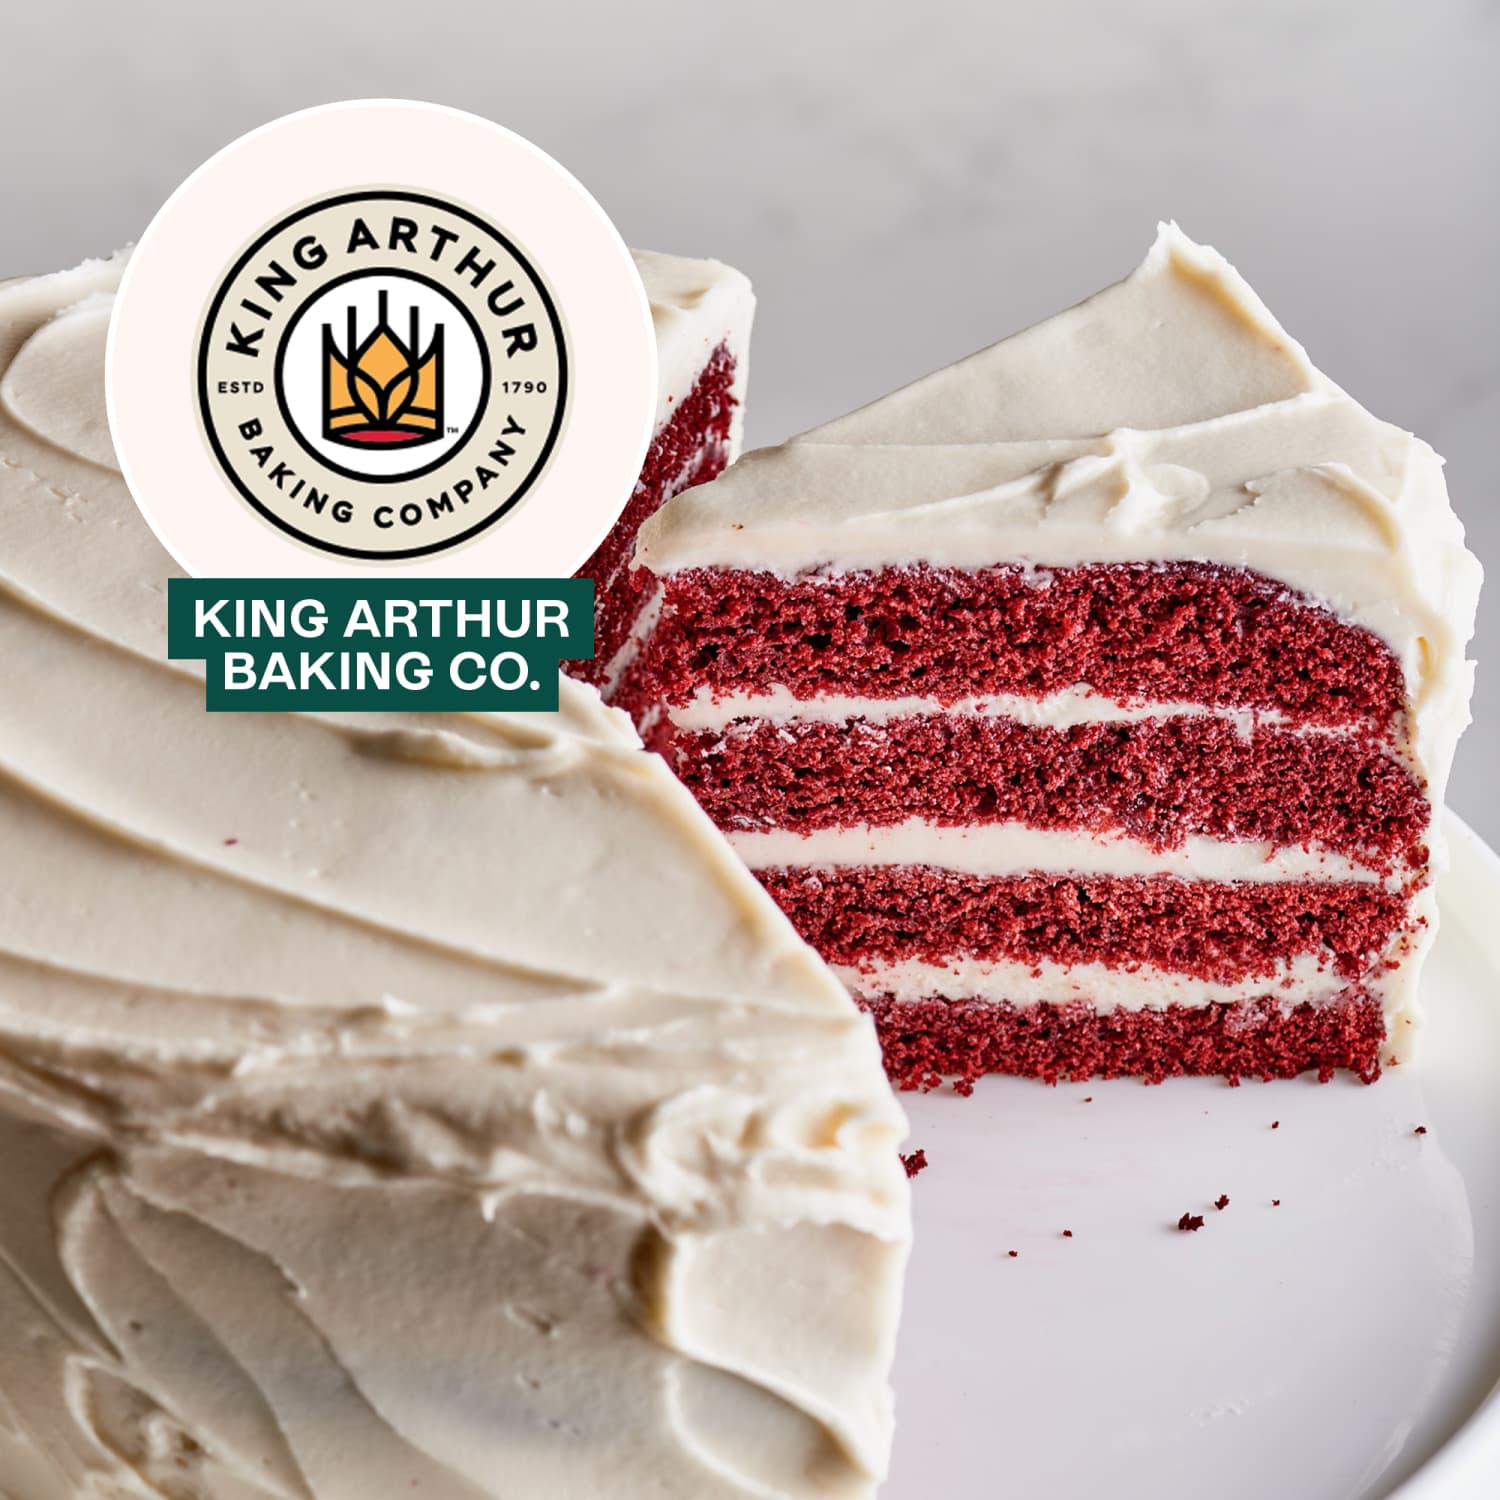 I Tried King Arthur Baking Company's Red Velvet Cake